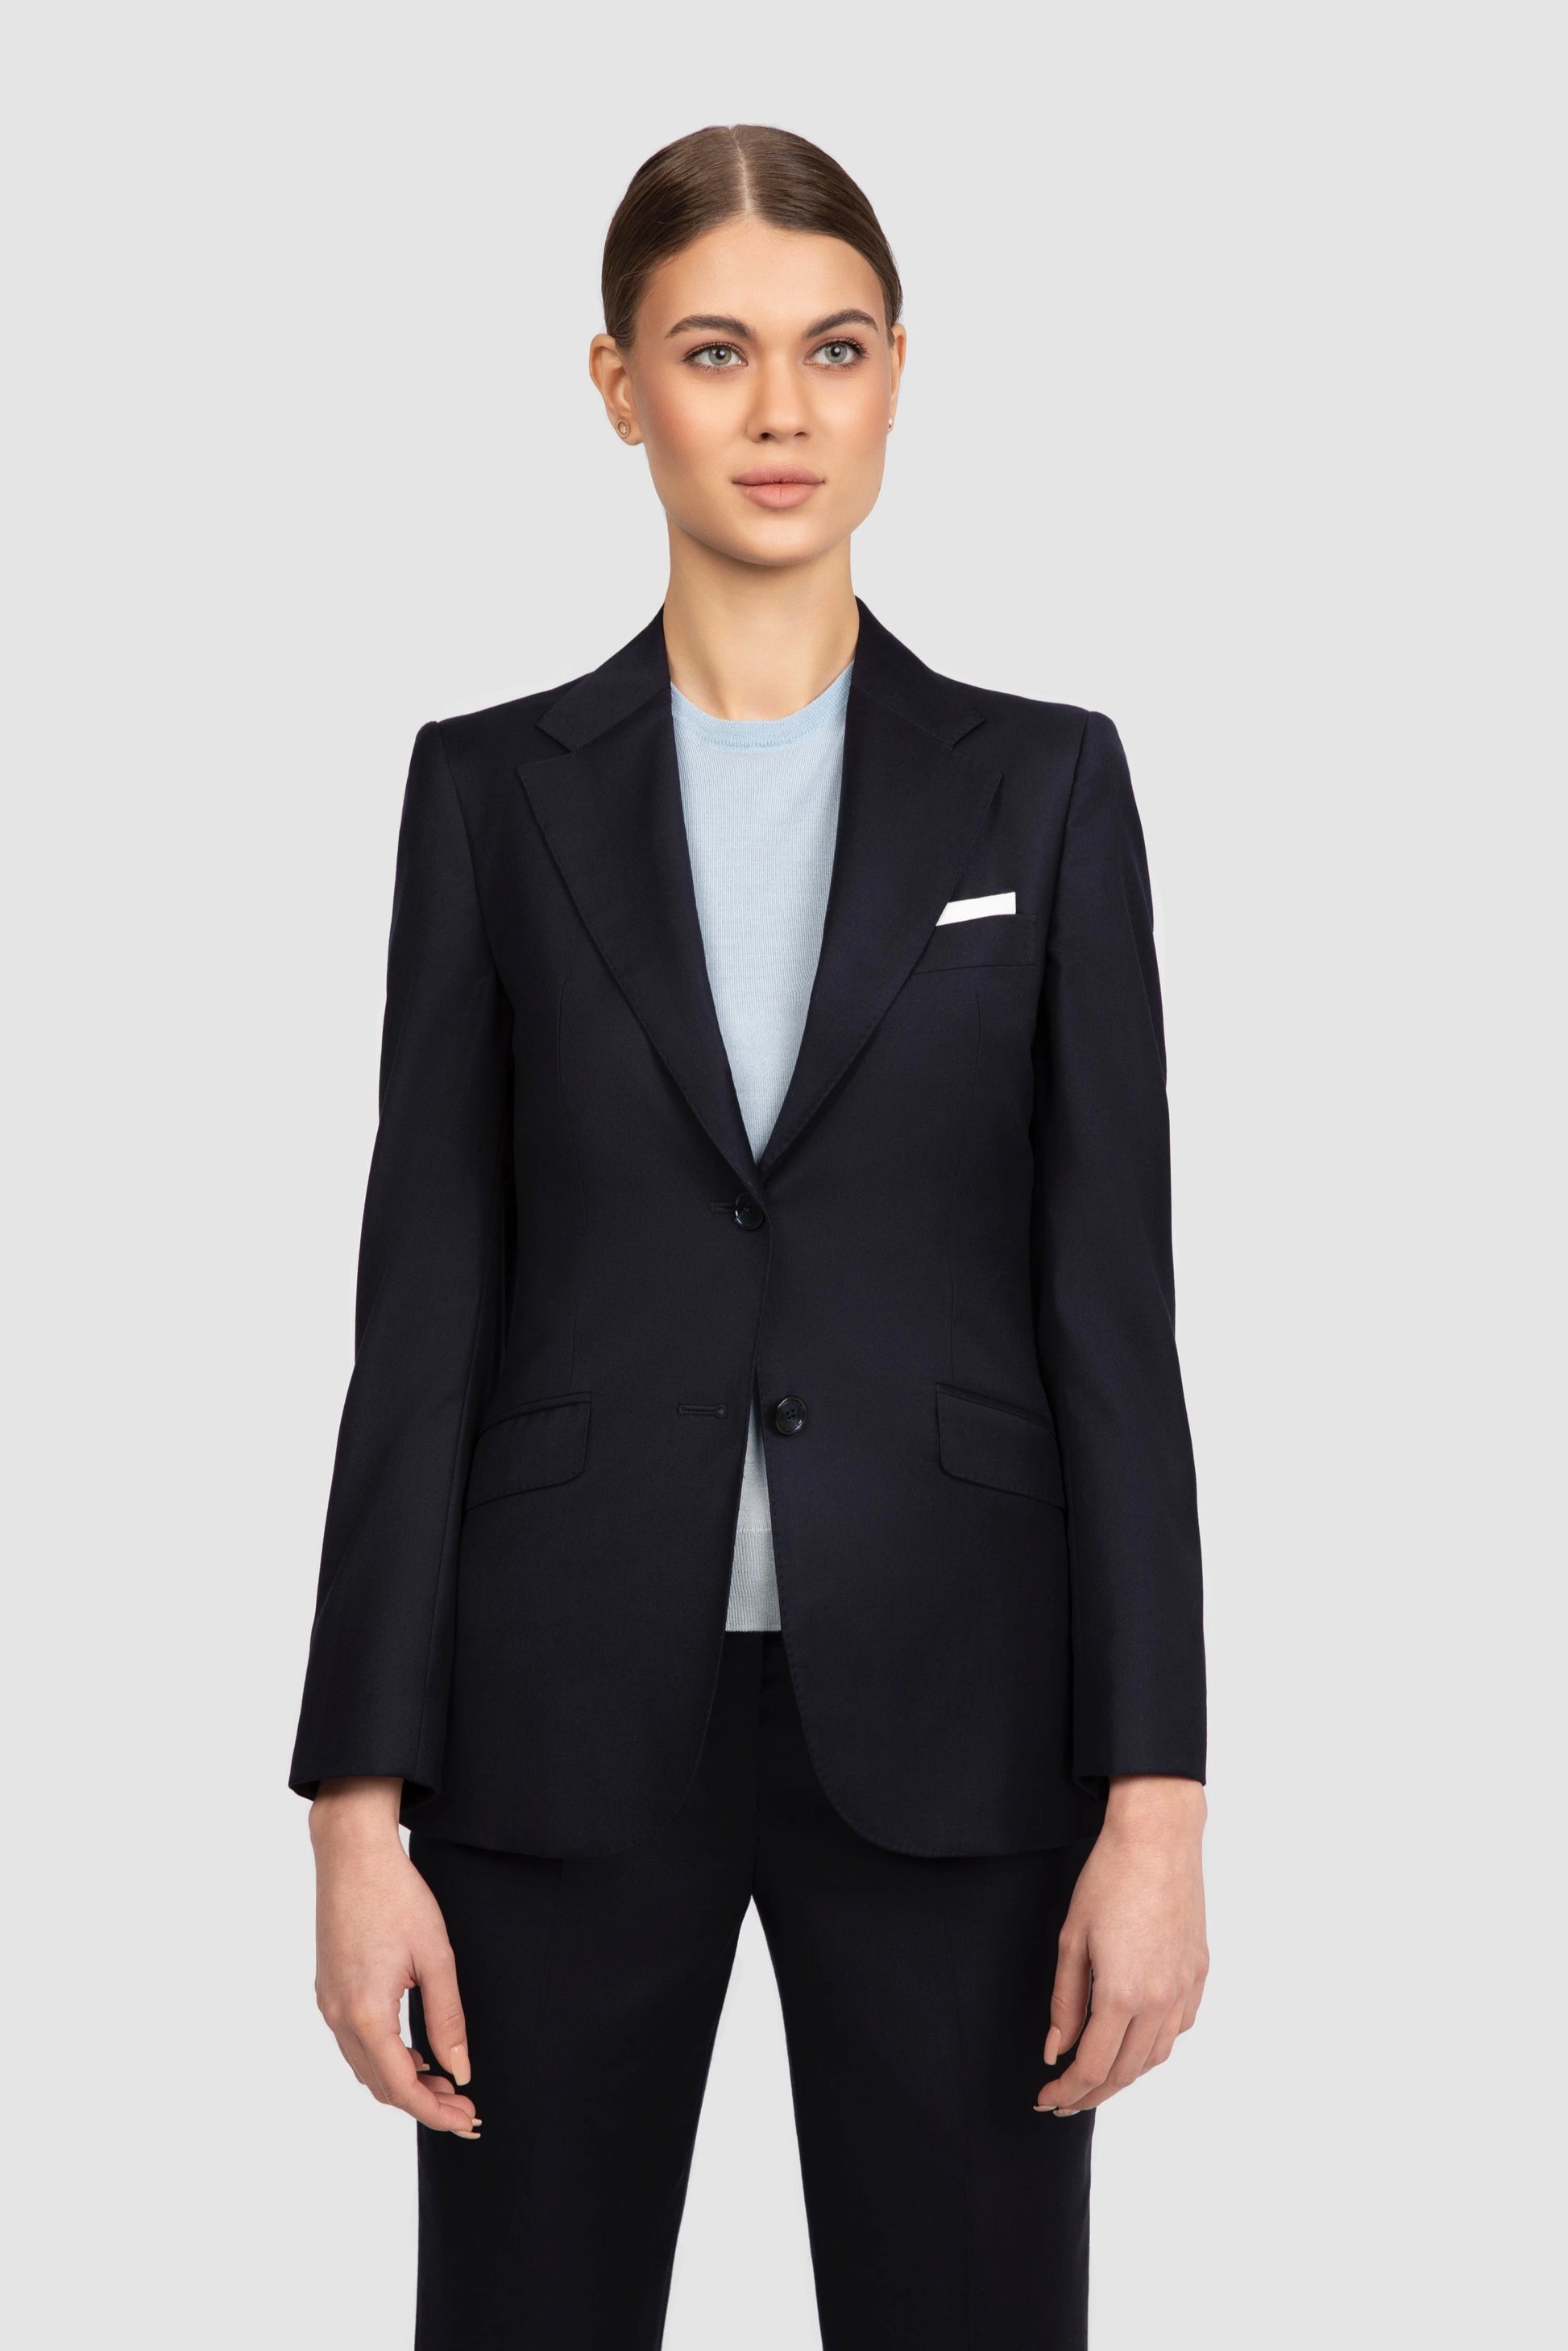 Navy Curve Suit Women's Business Suits